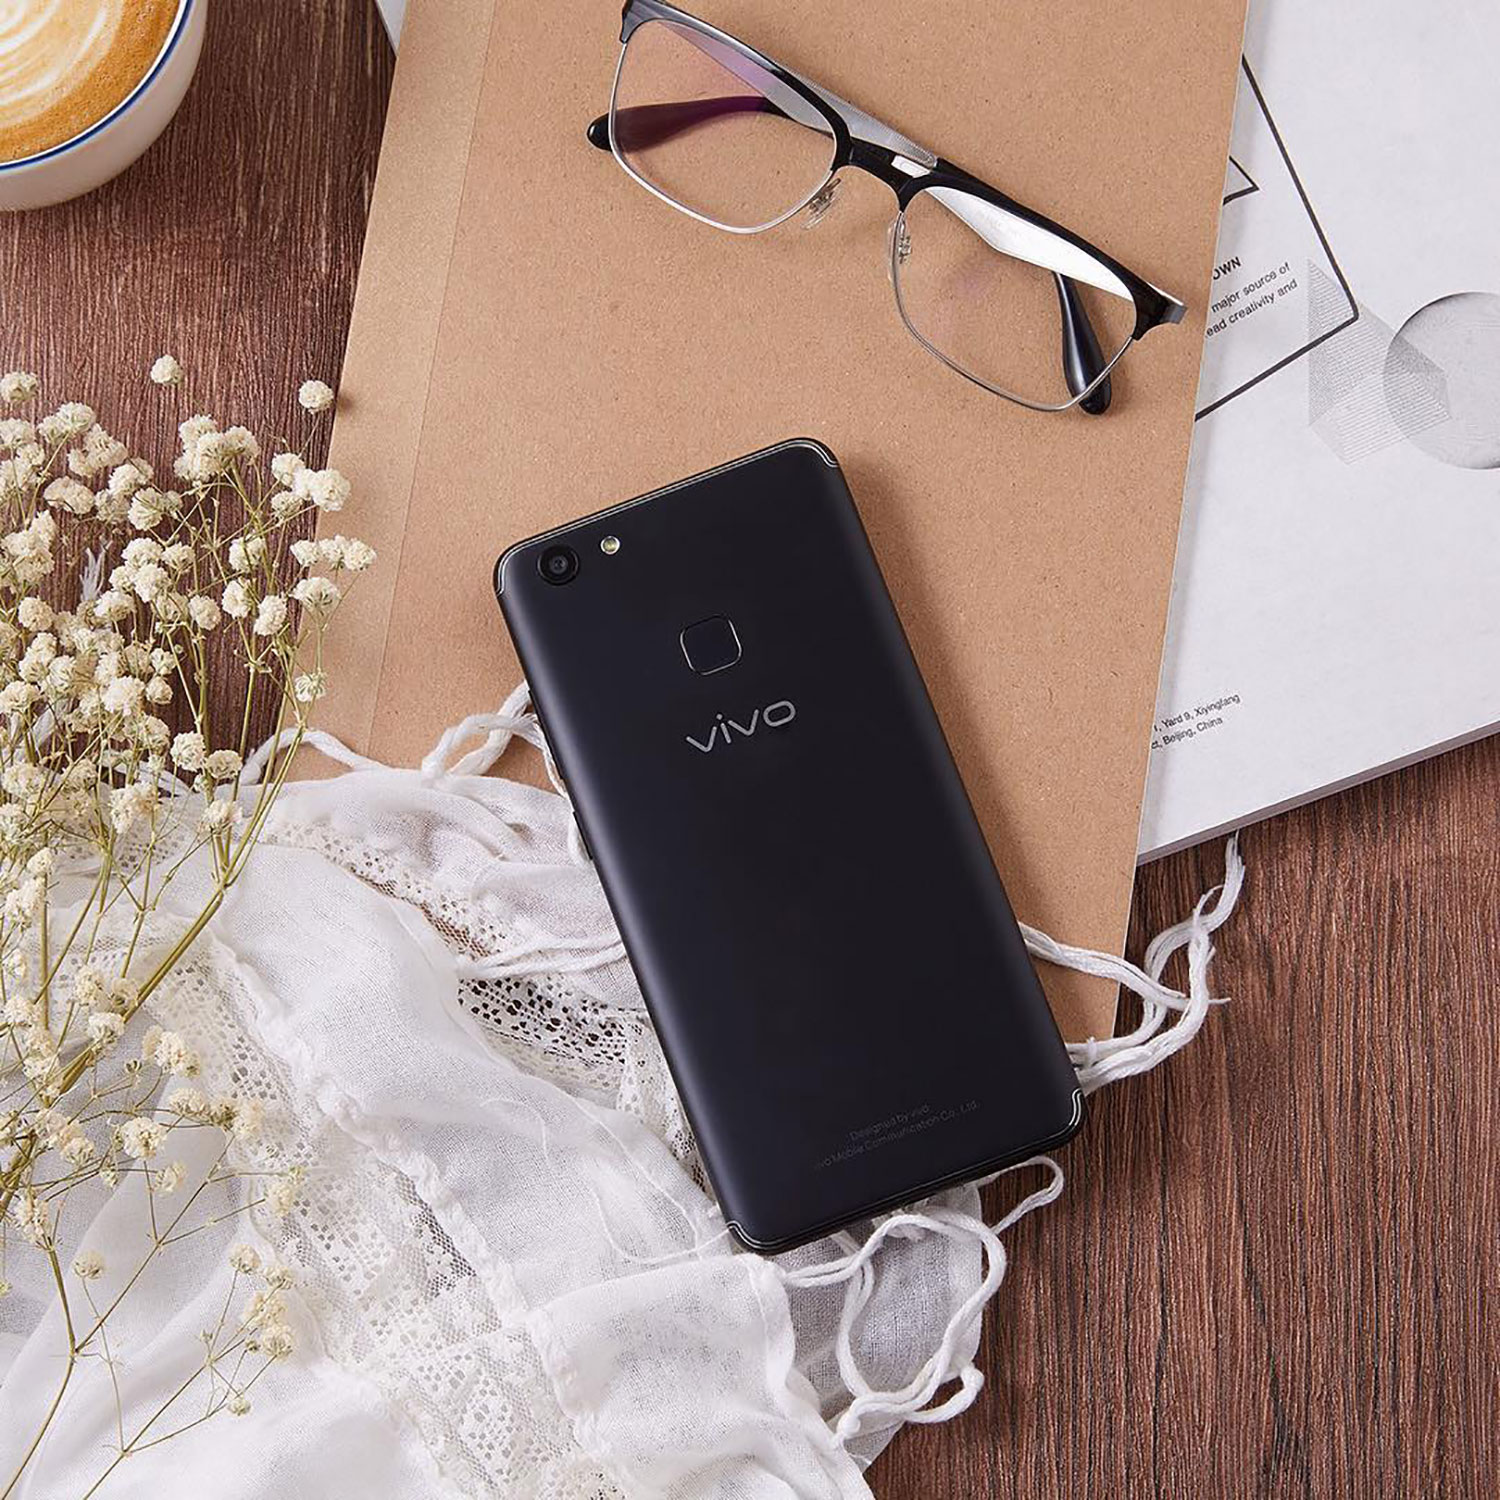 Global Smartphone Brand VIVO Debuts in Singapore with VIVO V7+